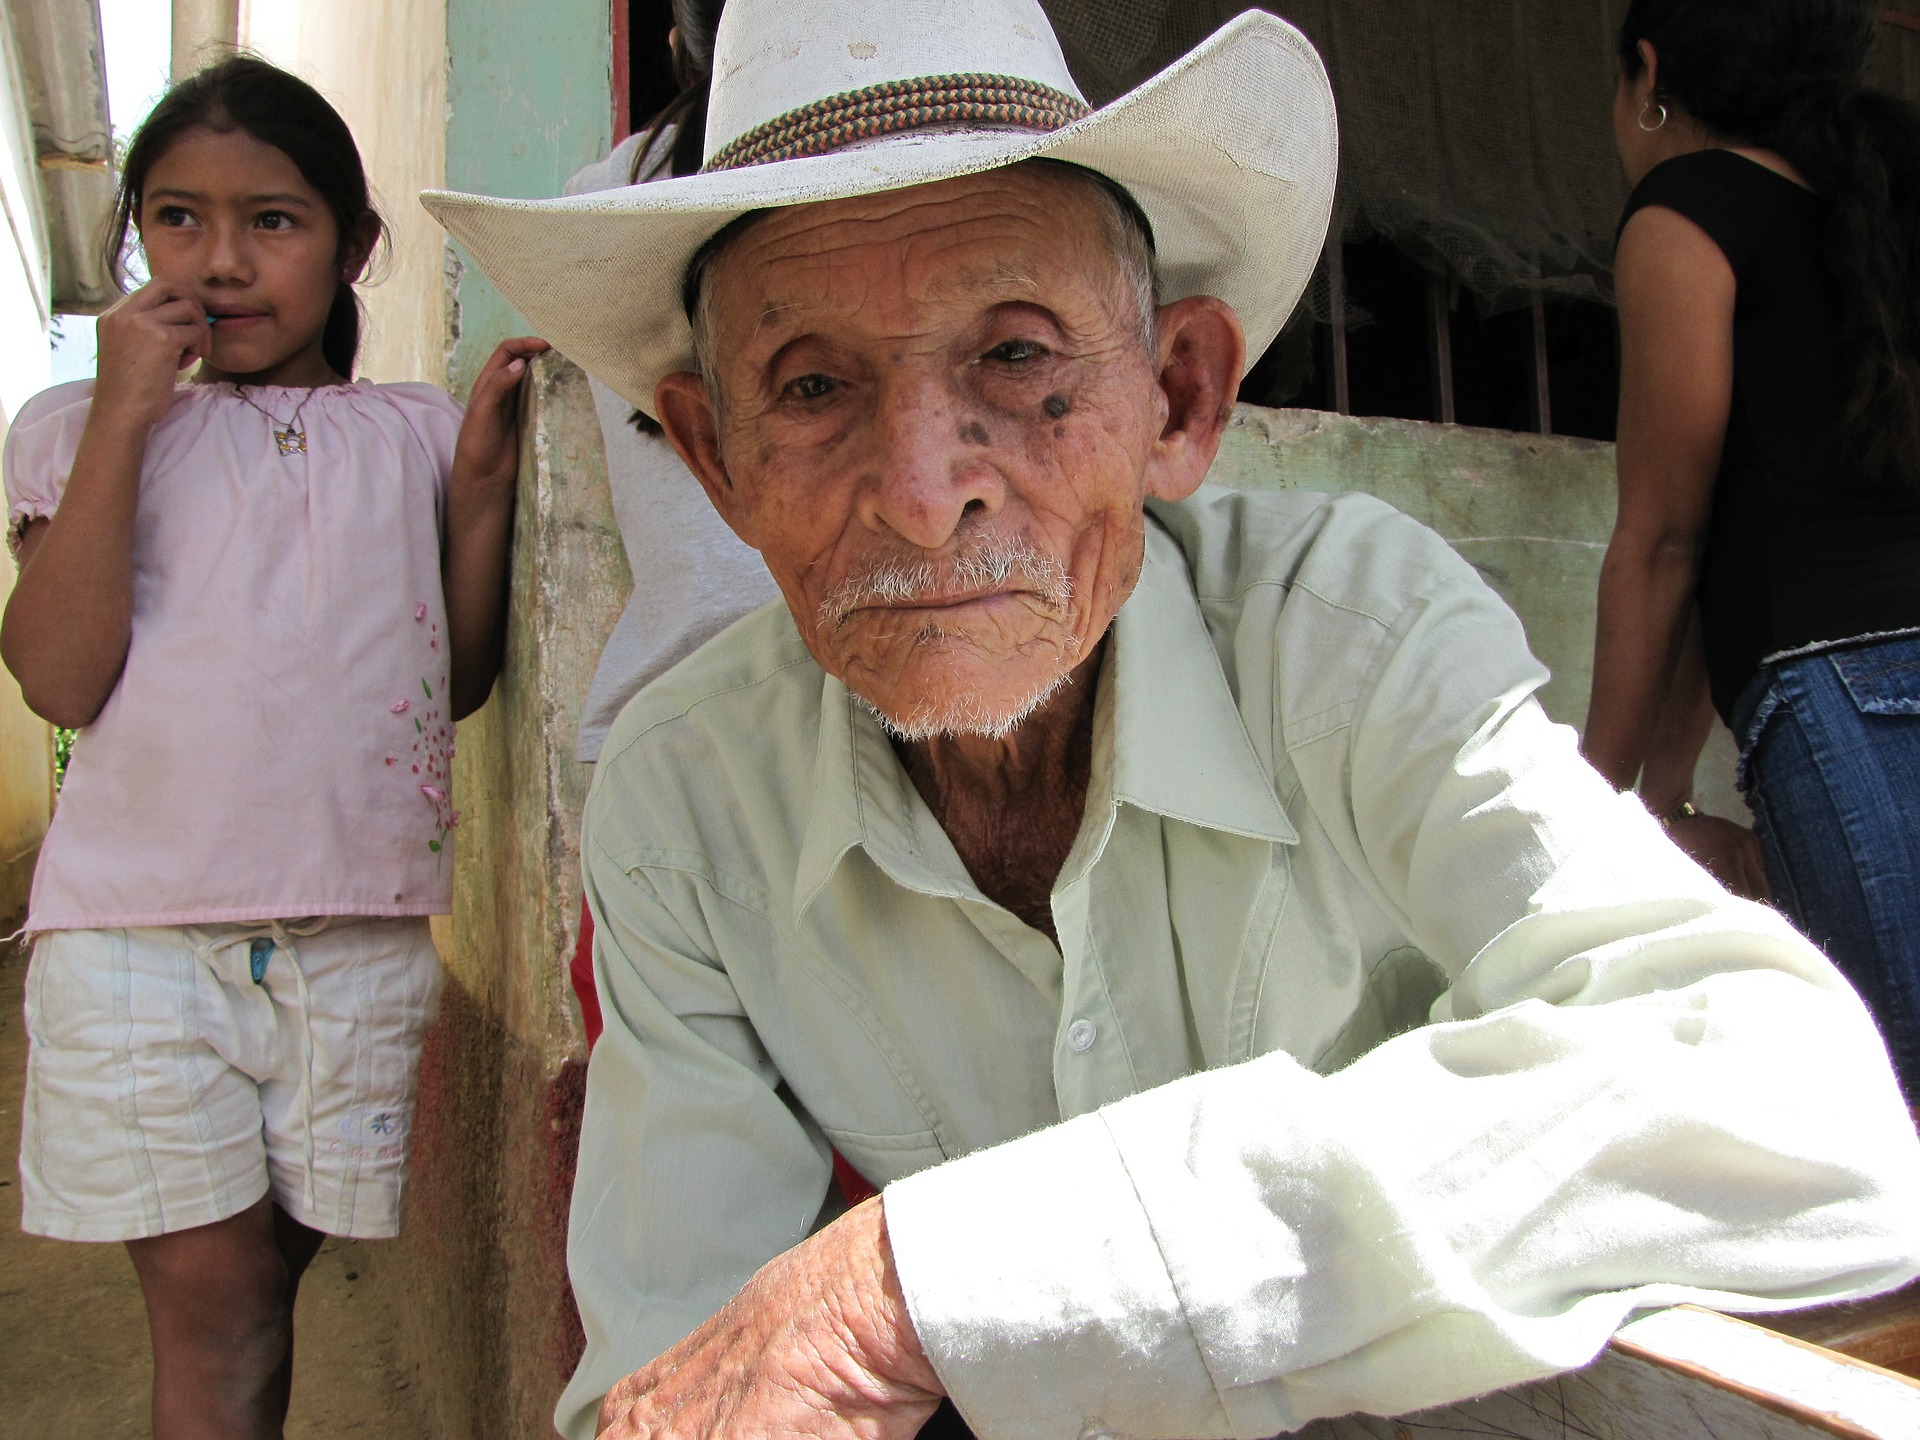 ICYE Freiwillige für Projekte in Seniorenbetreuung in Honduras